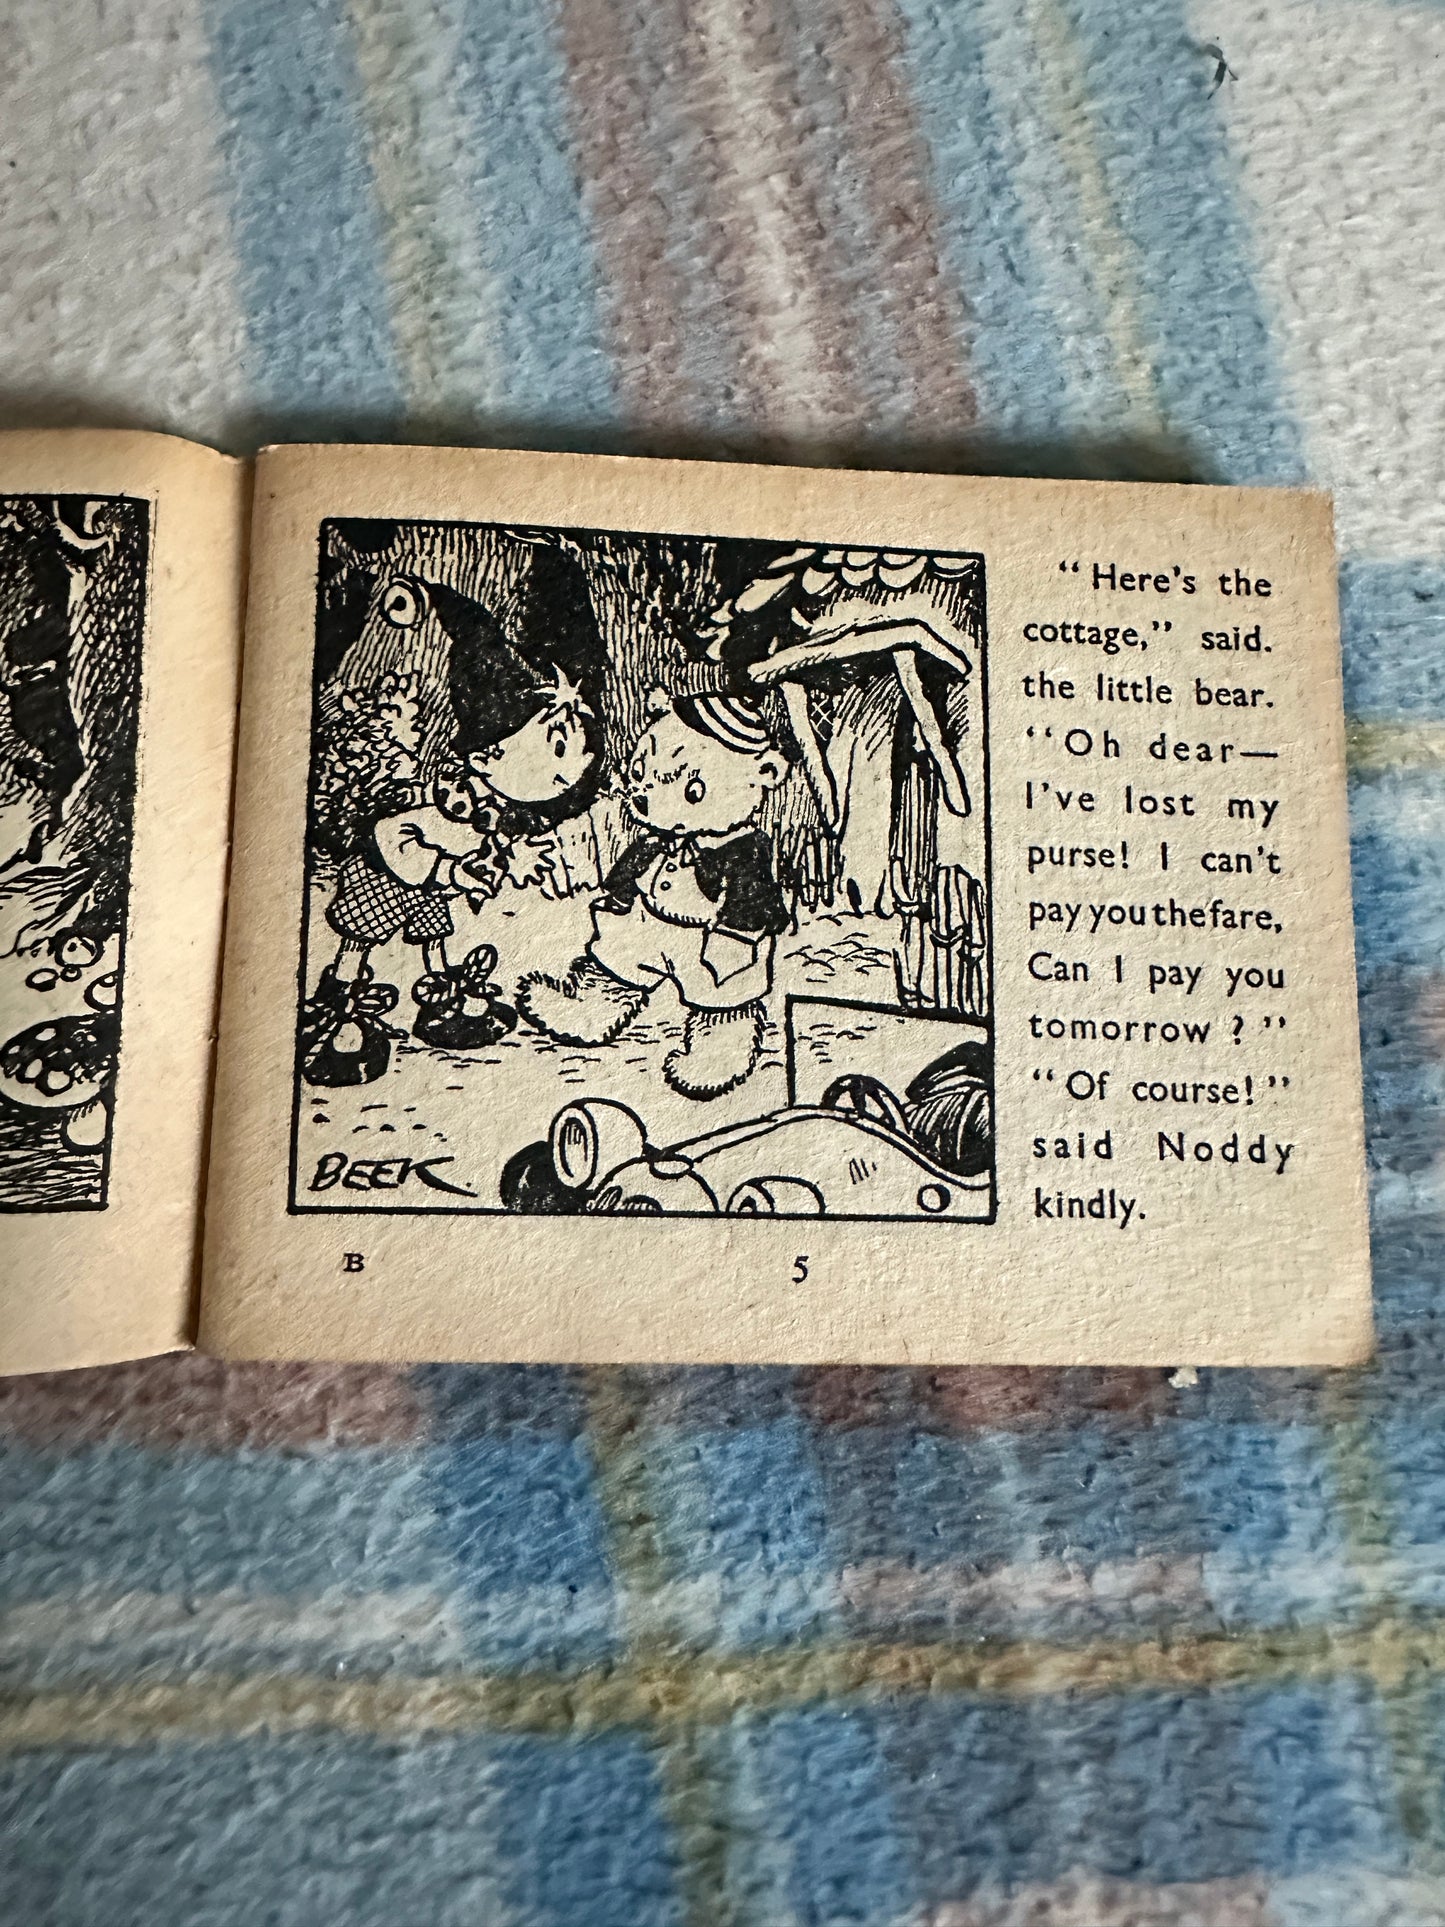 1952 Noddy’s Ark Of Books(5 Books No Ark) Enid Blyton(Beek illustration)Sampson Low